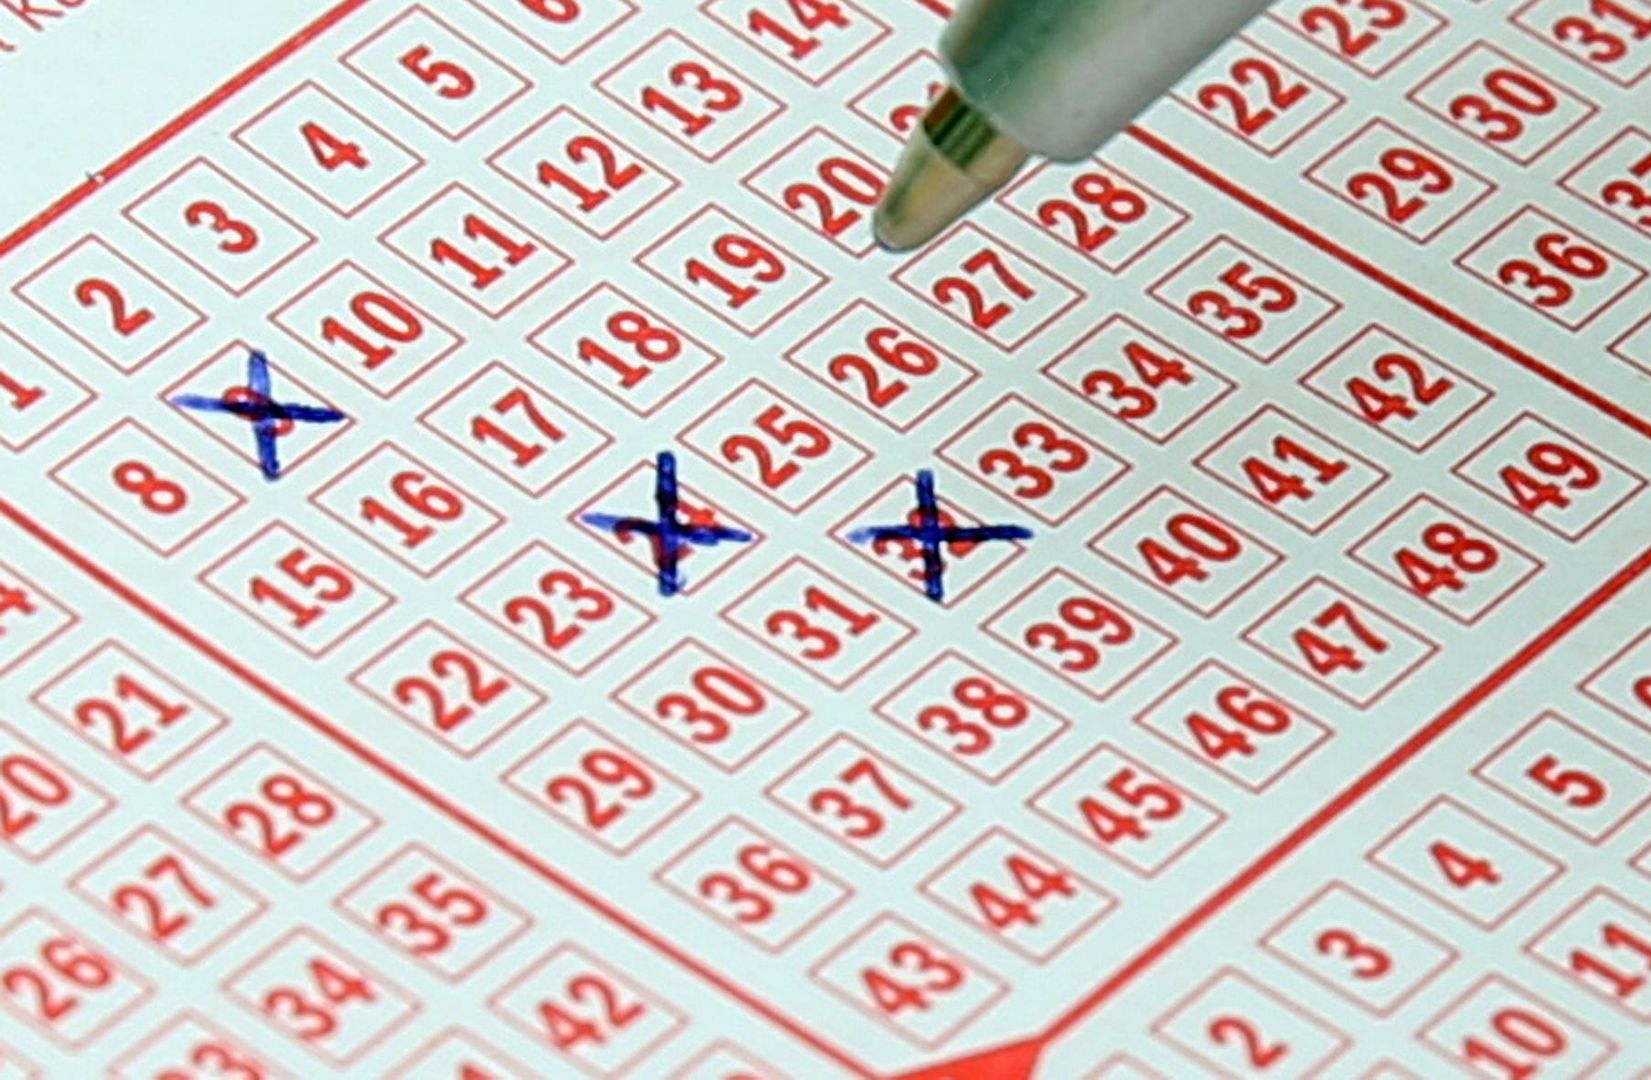 Kumulacja Lotto: padła główna wygrana! Oto szczęśliwe liczby